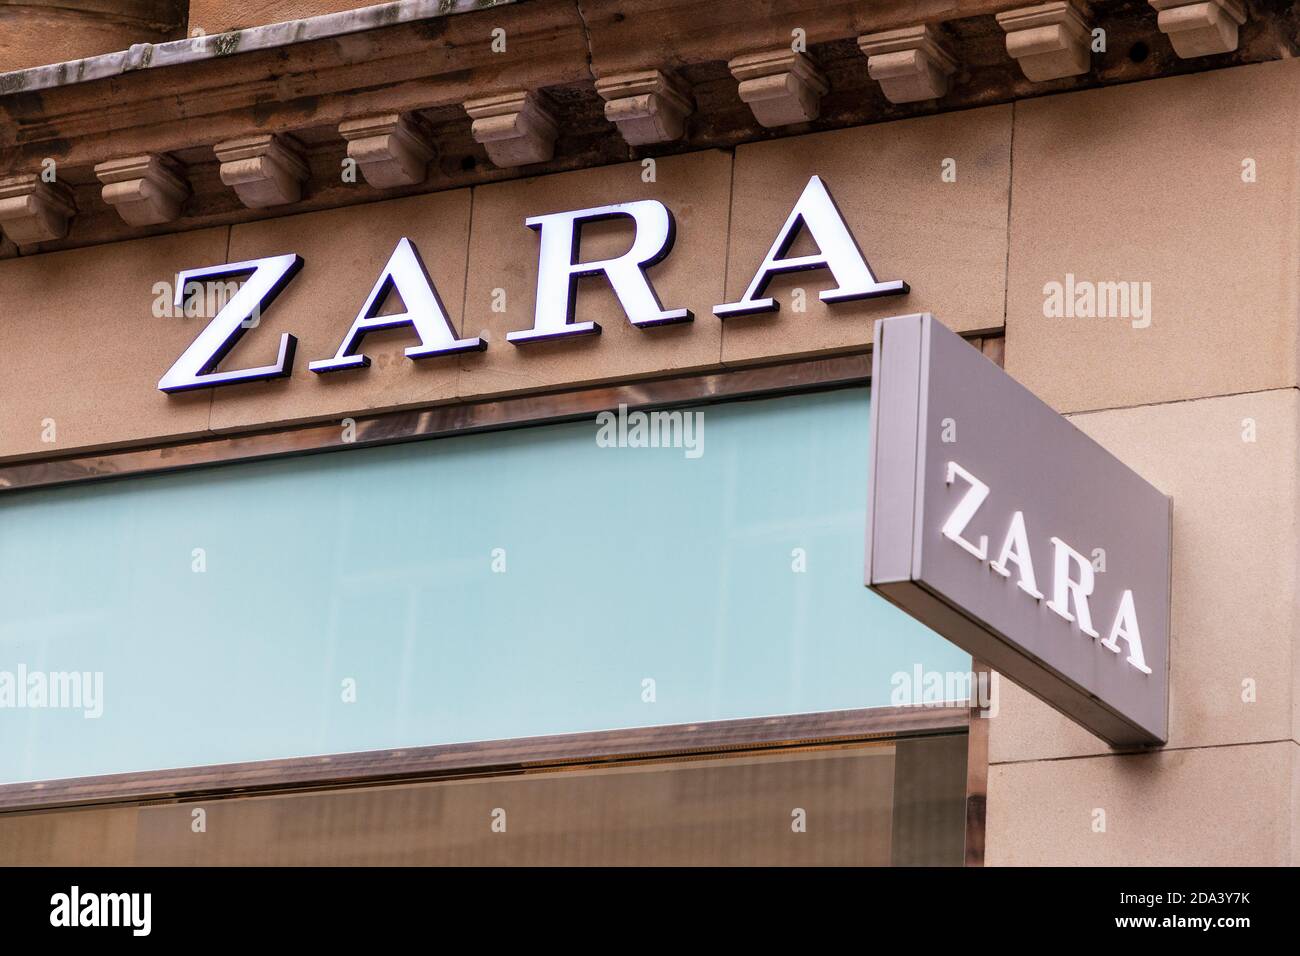 Logo commercial pour le magasin de mode, ZARA, Glasgow, Royaume-Uni Banque D'Images